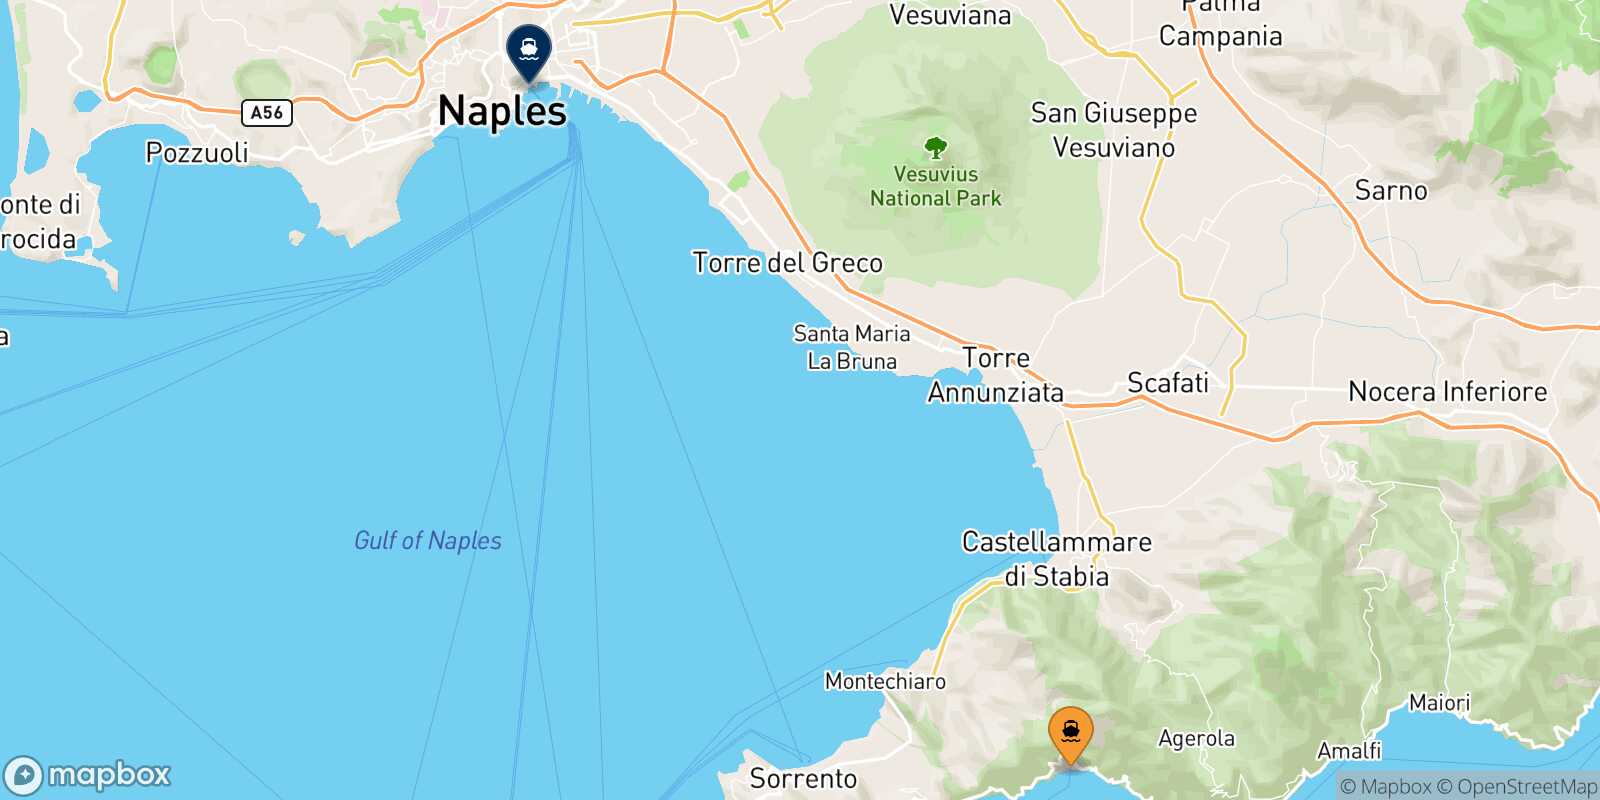 Carte des traverséesPositano Naples Beverello